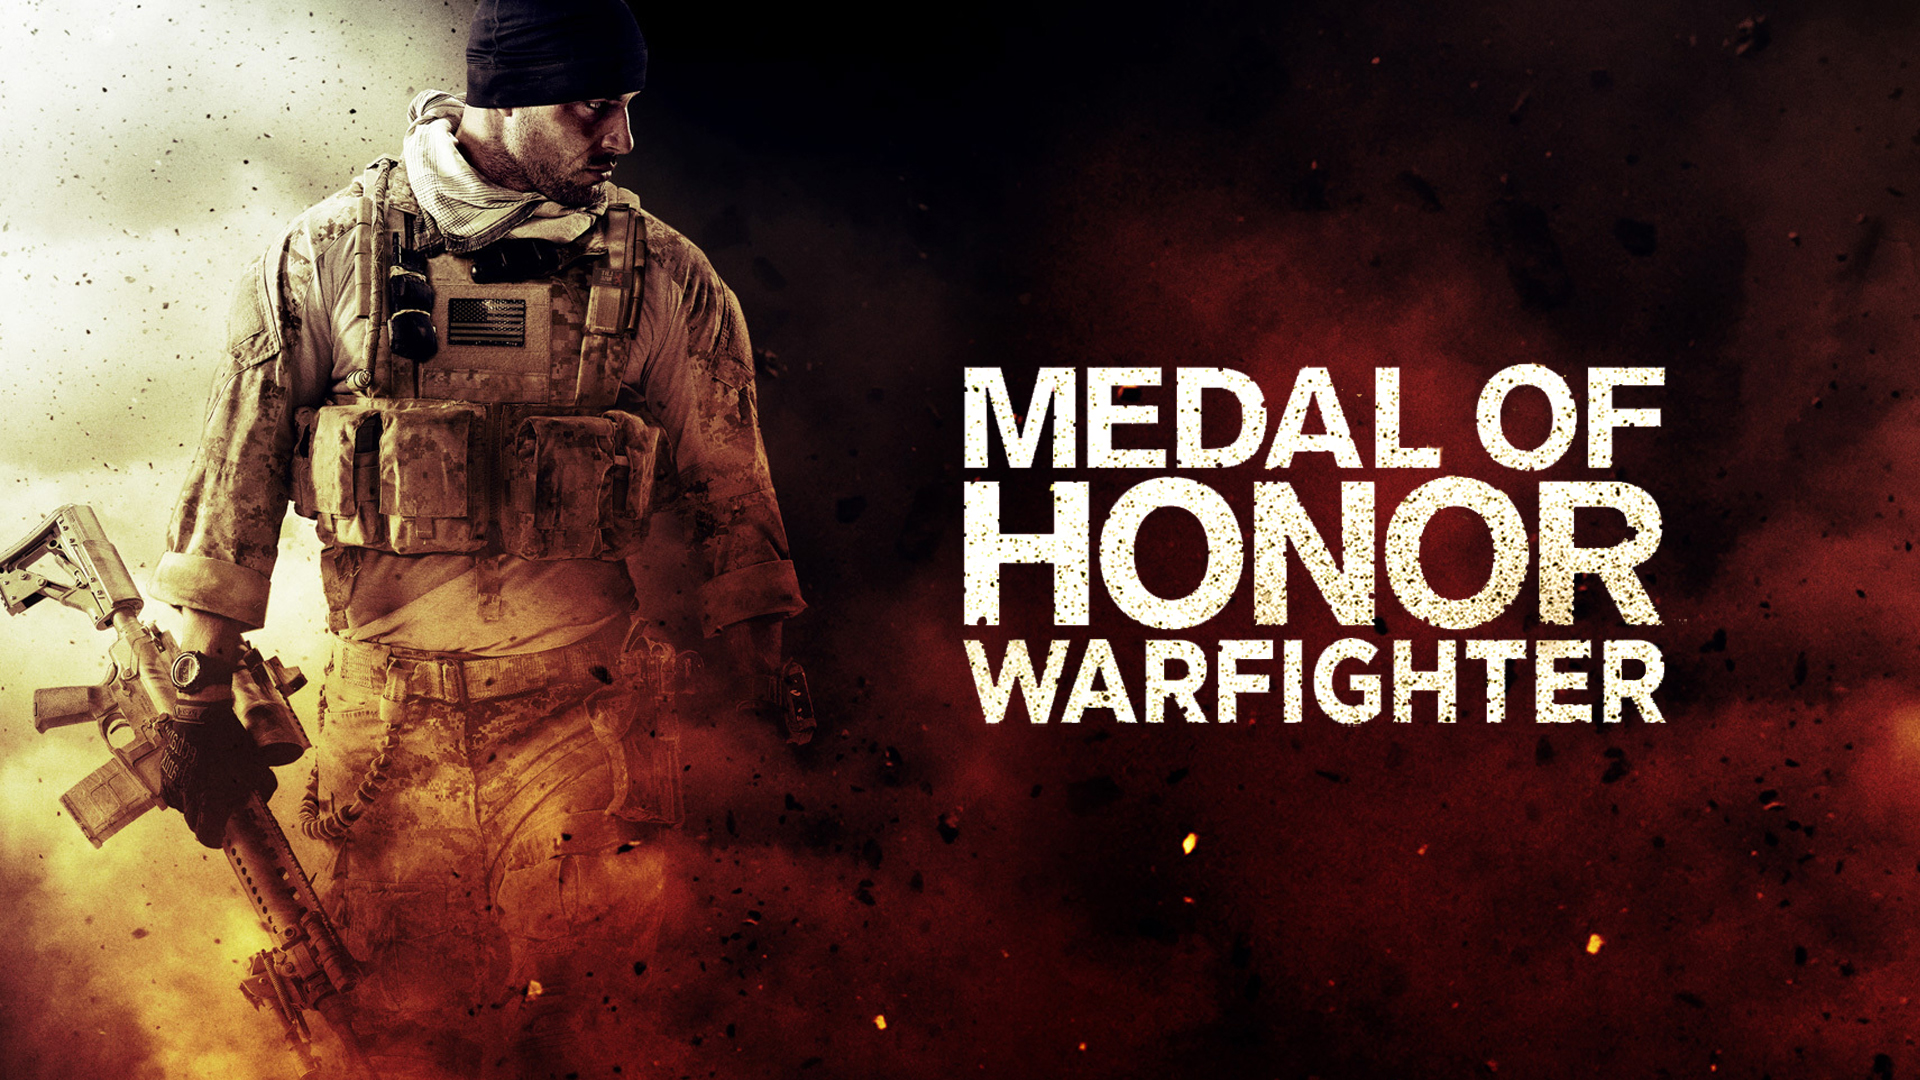 Medal of Honor Warfighter Wallpaper #5 by xKirbz on DeviantArt